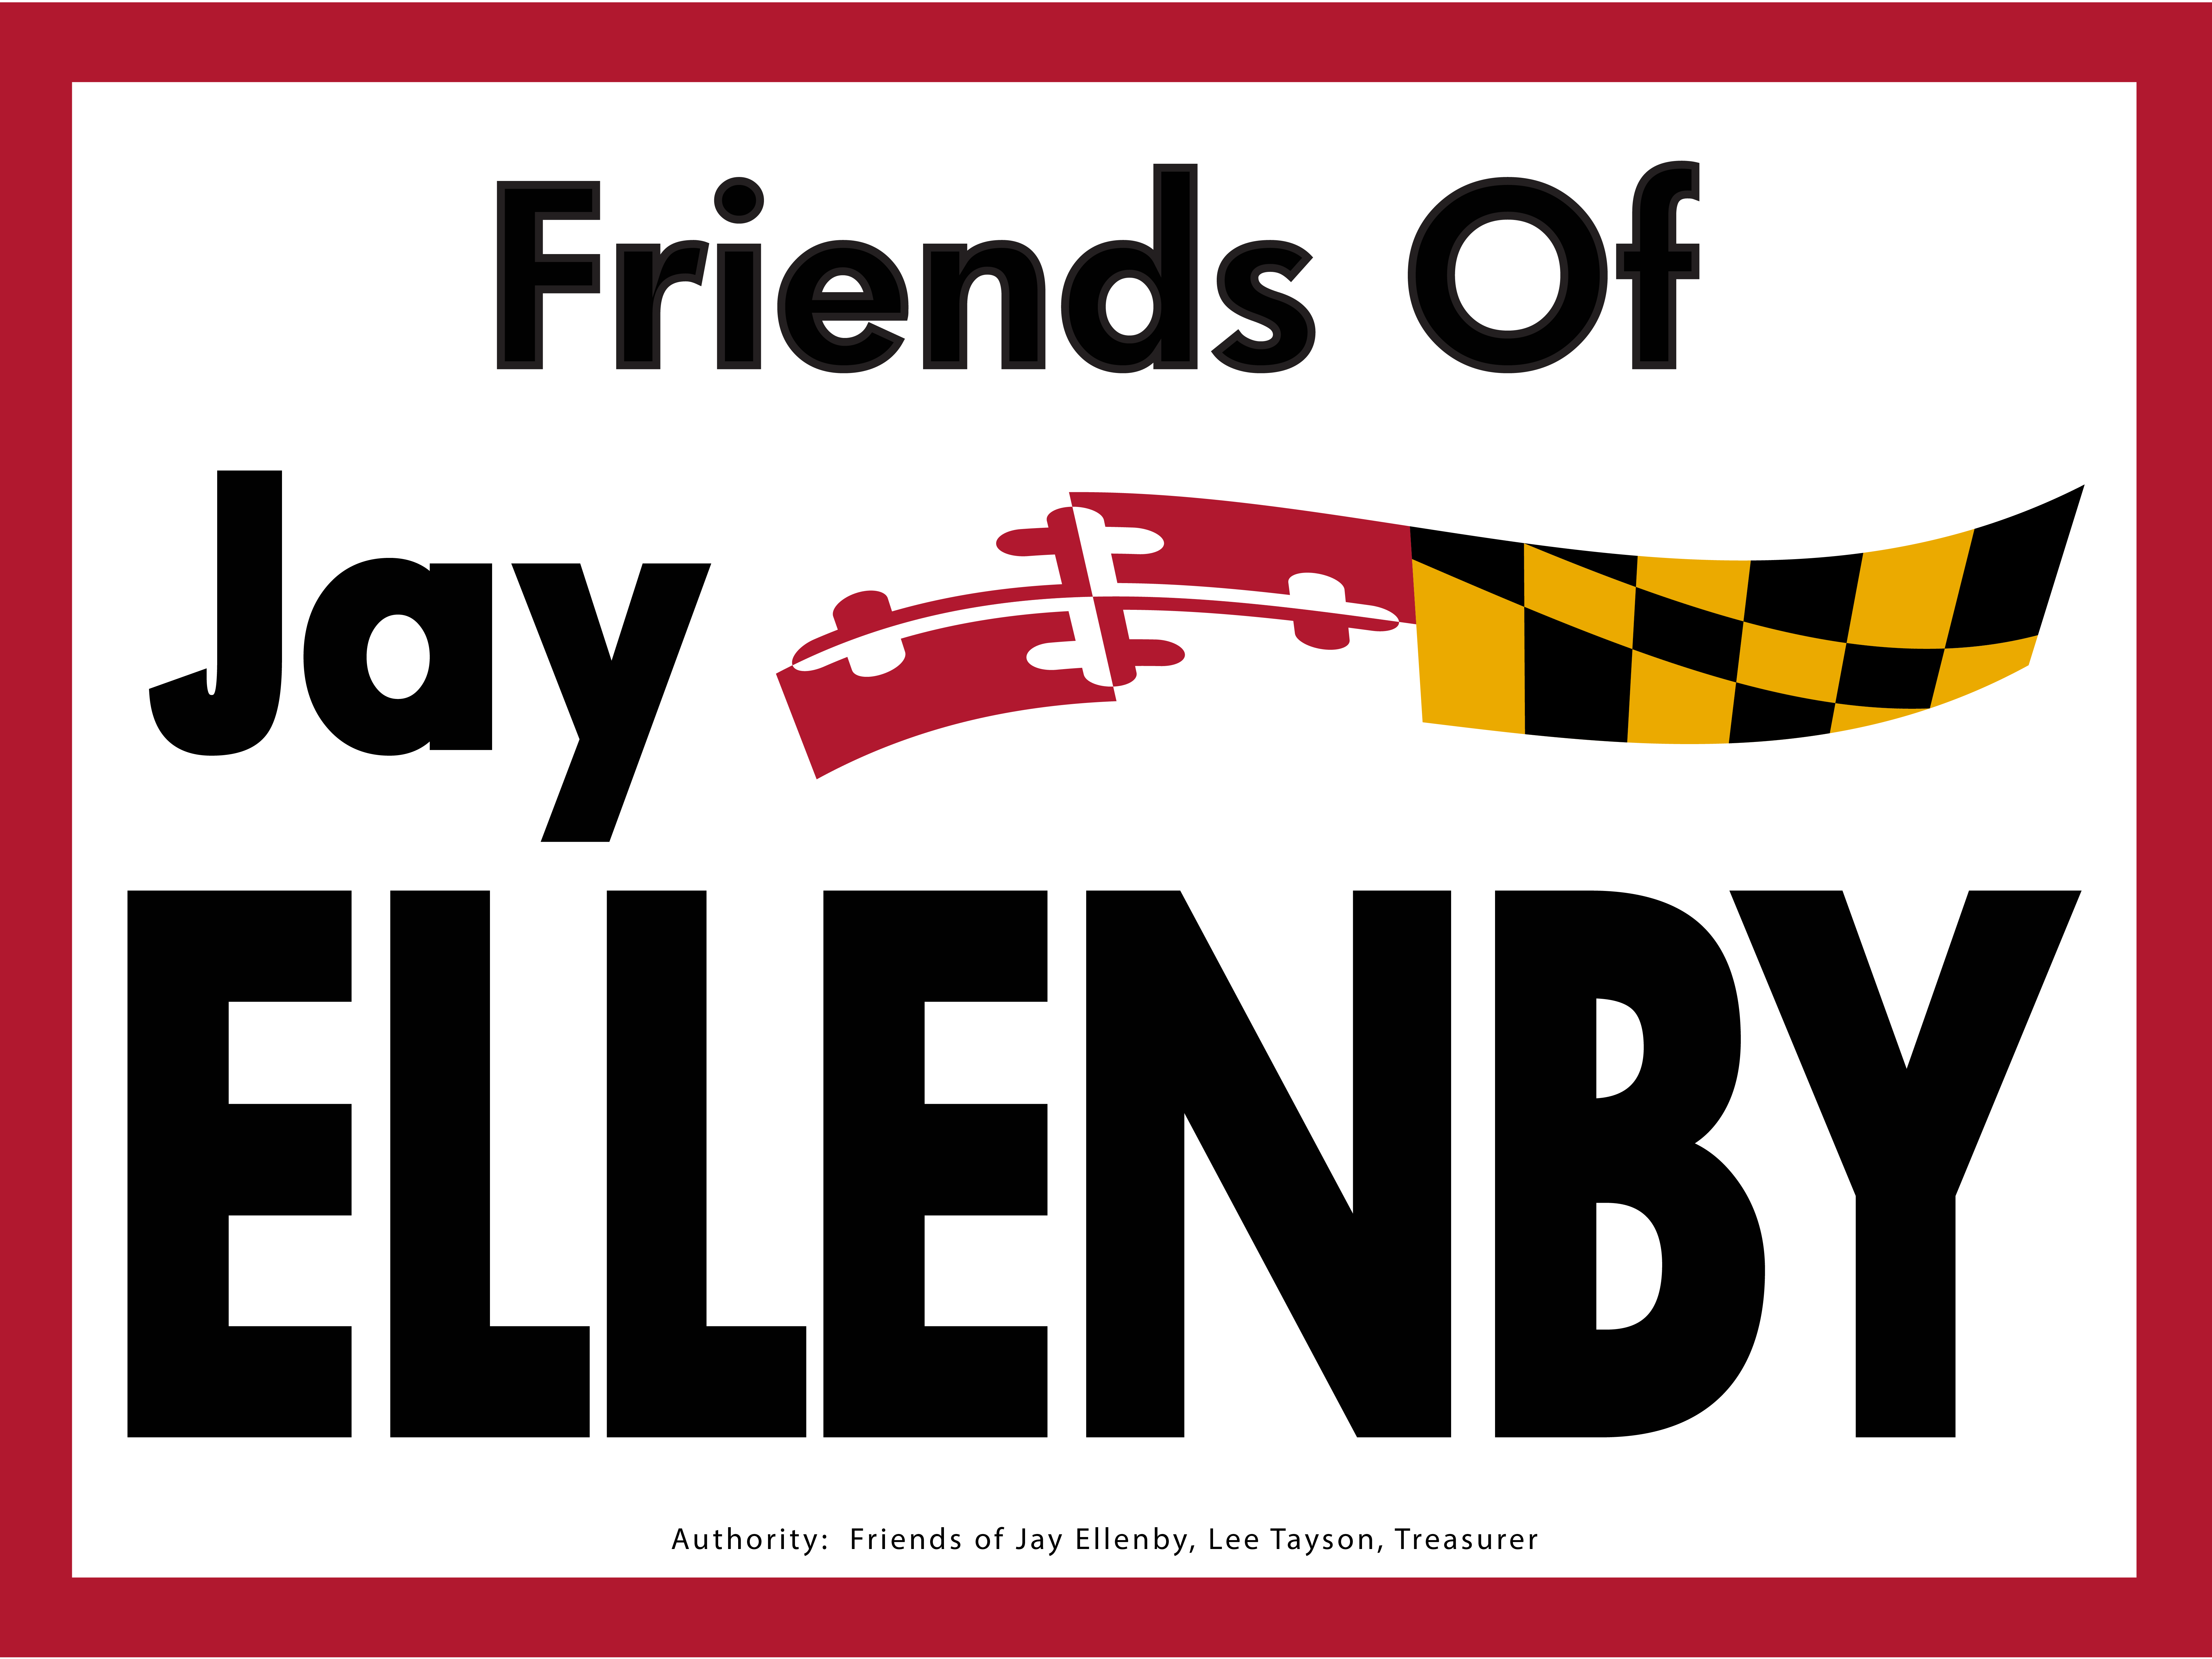 Friends of Jay Ellenby